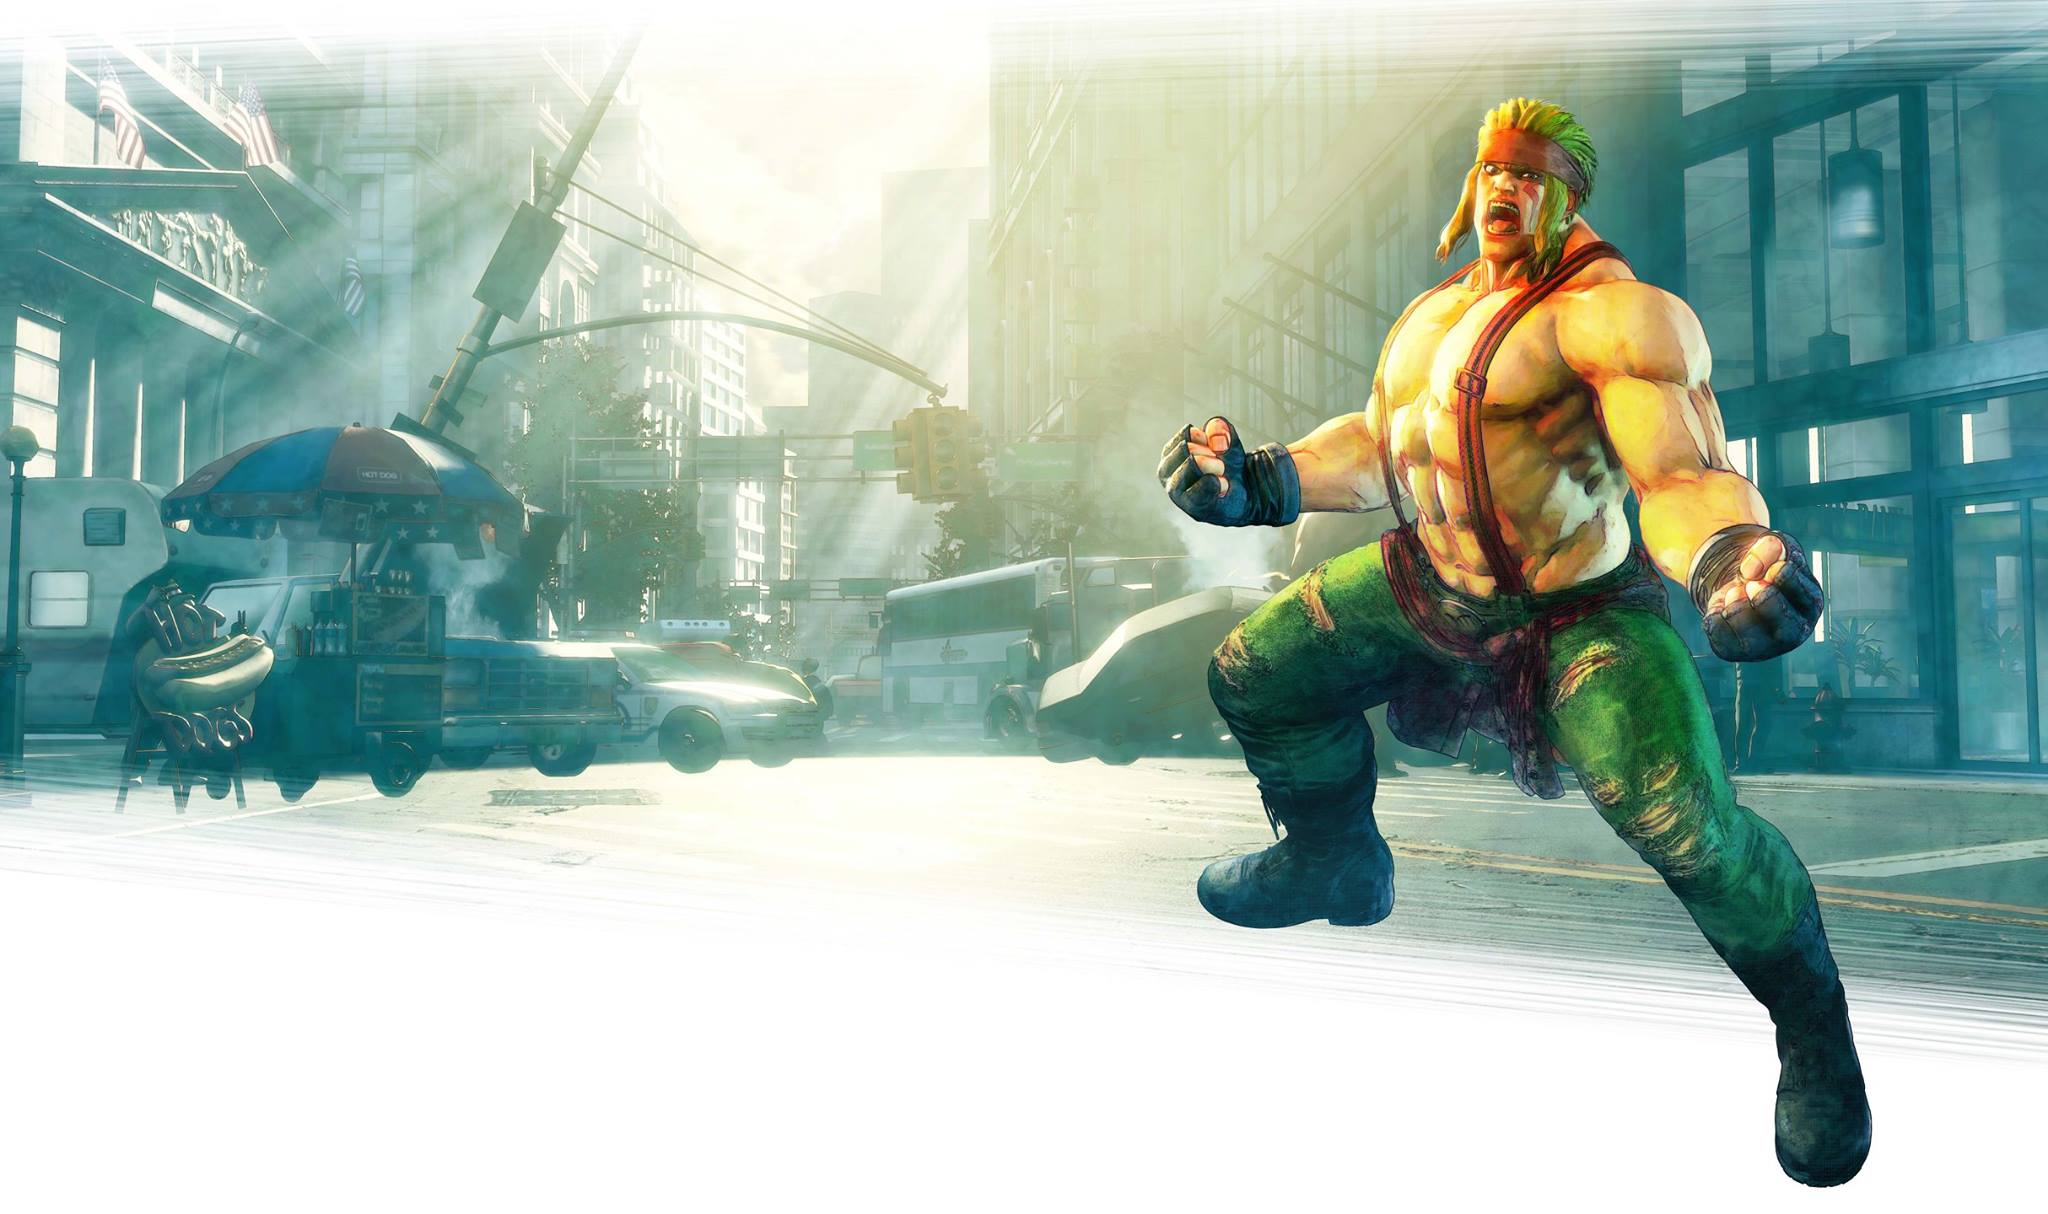 Dettagli e immagini di Alex in Street Fighter V